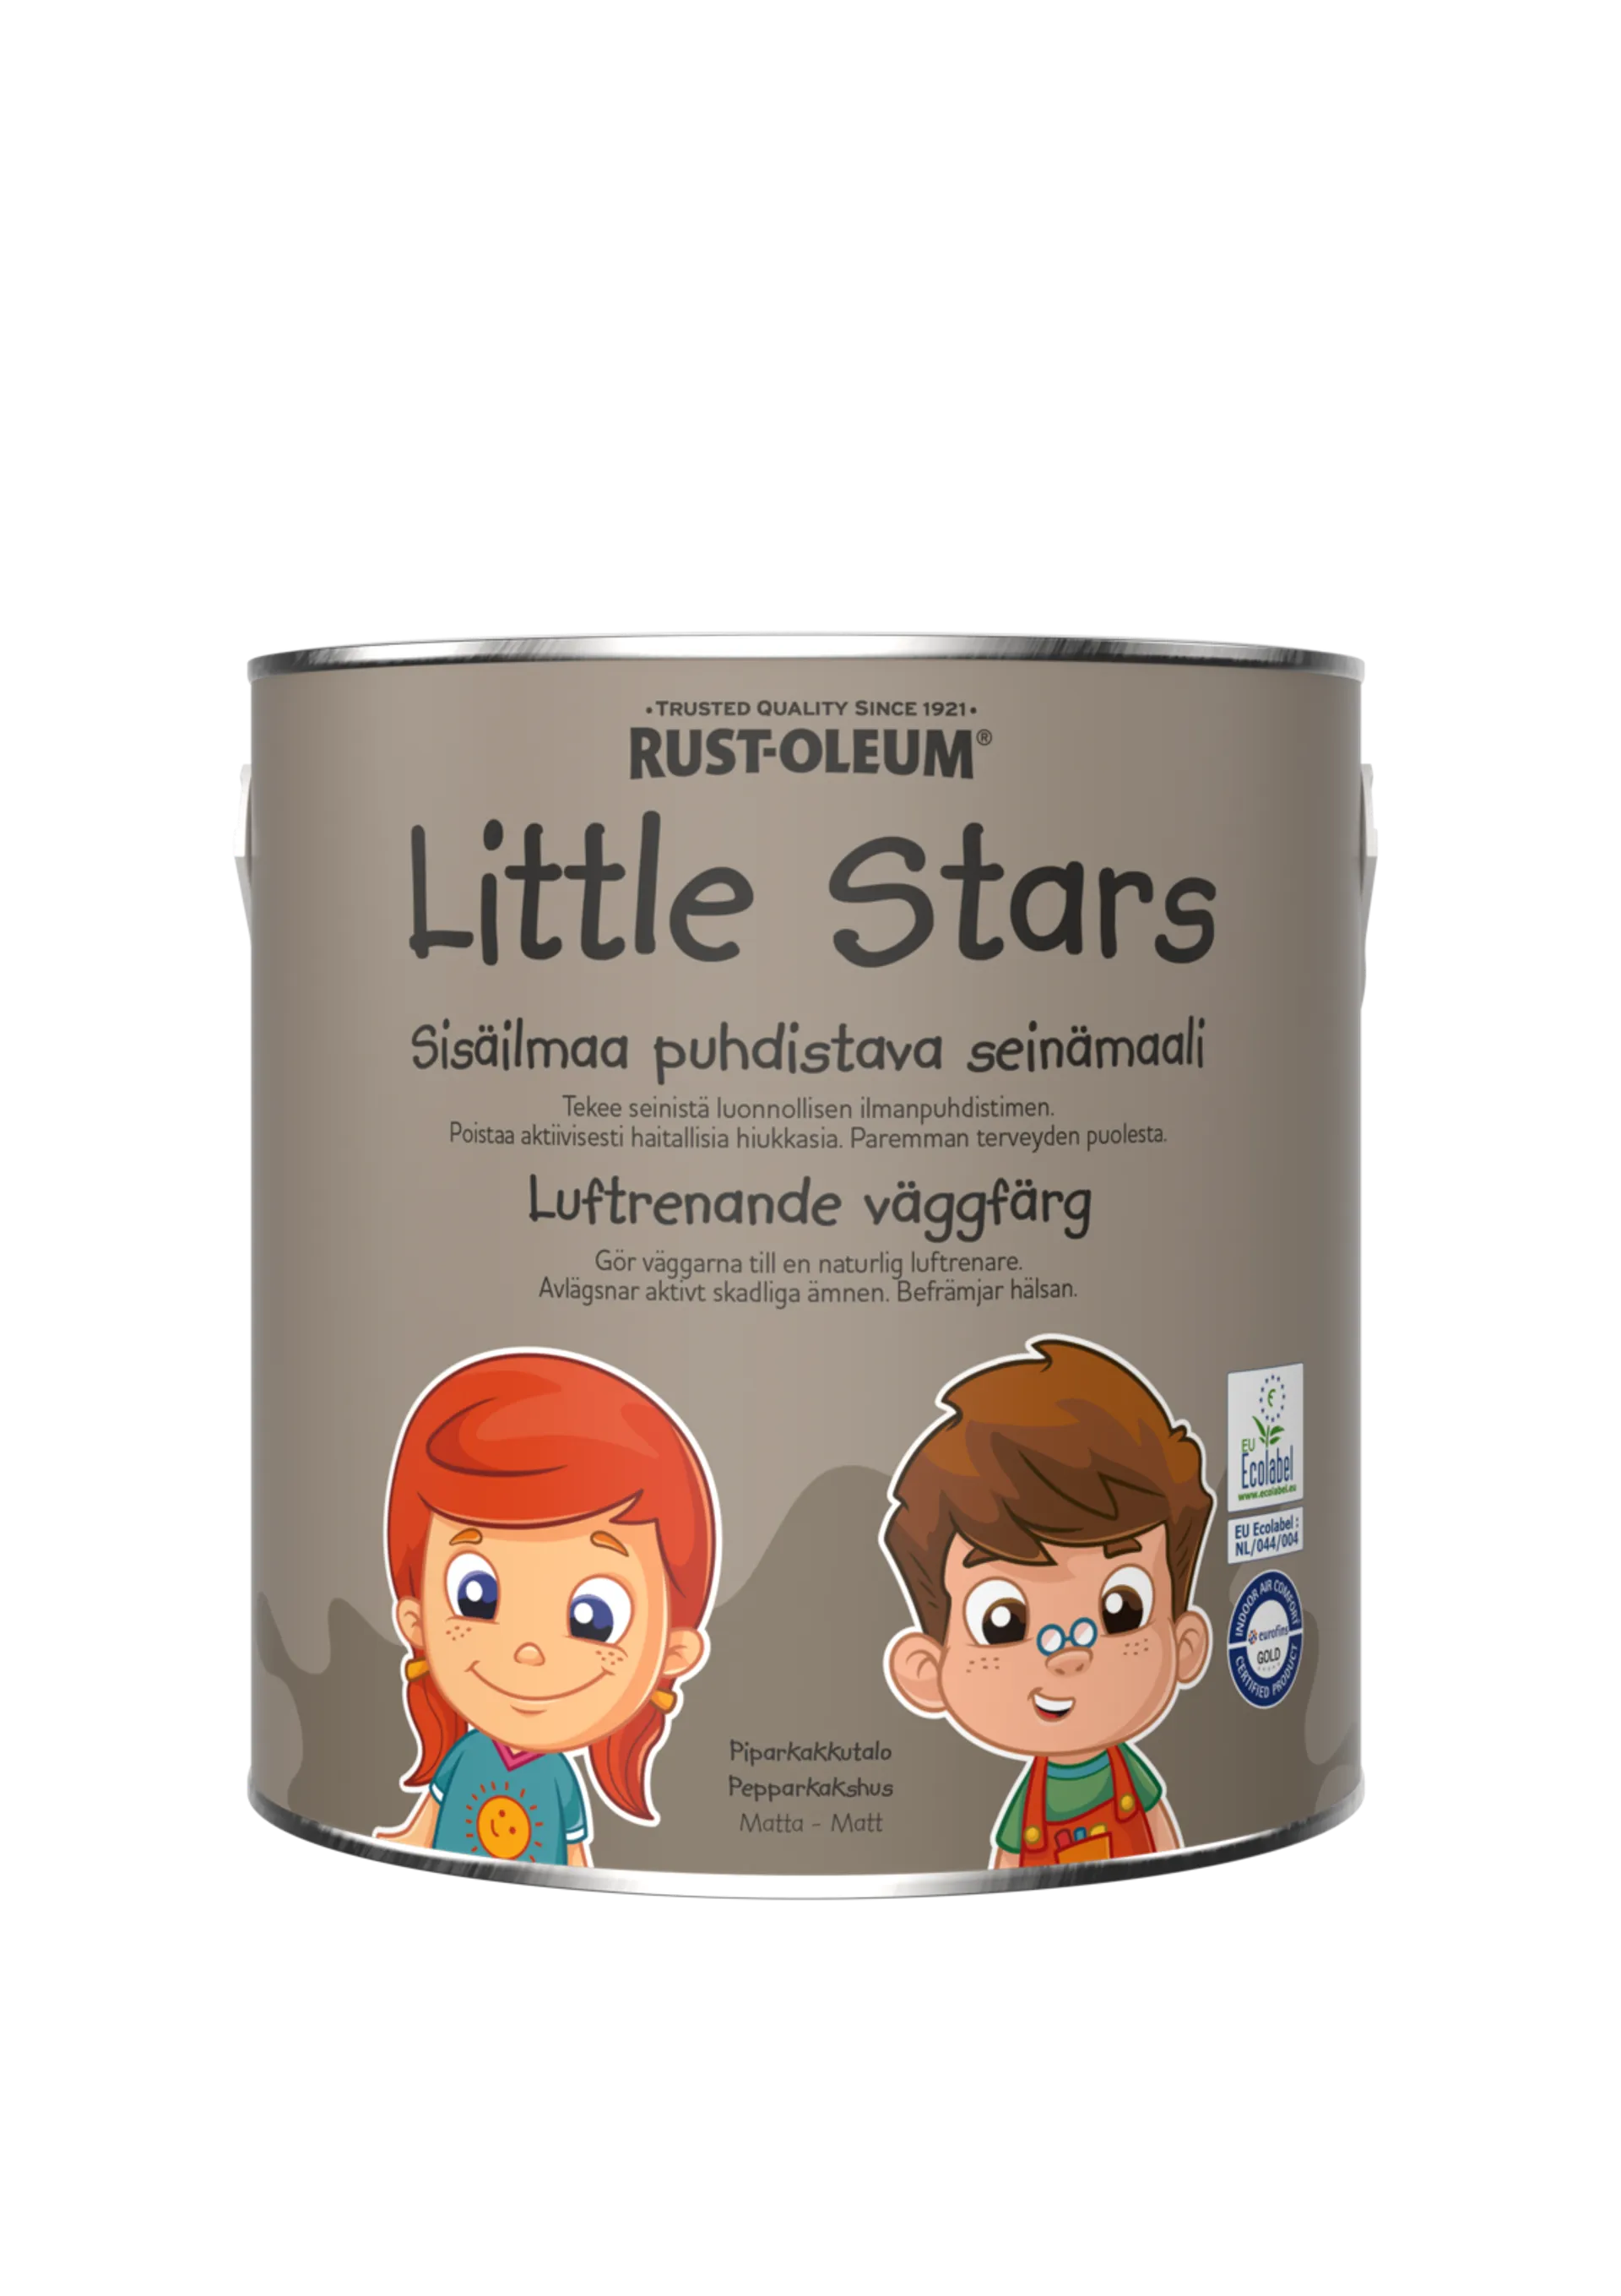 Rust-Oleum Little Stars Sisäilmaa puhdistava Seinämaali 2,5L Piparkakkutalo